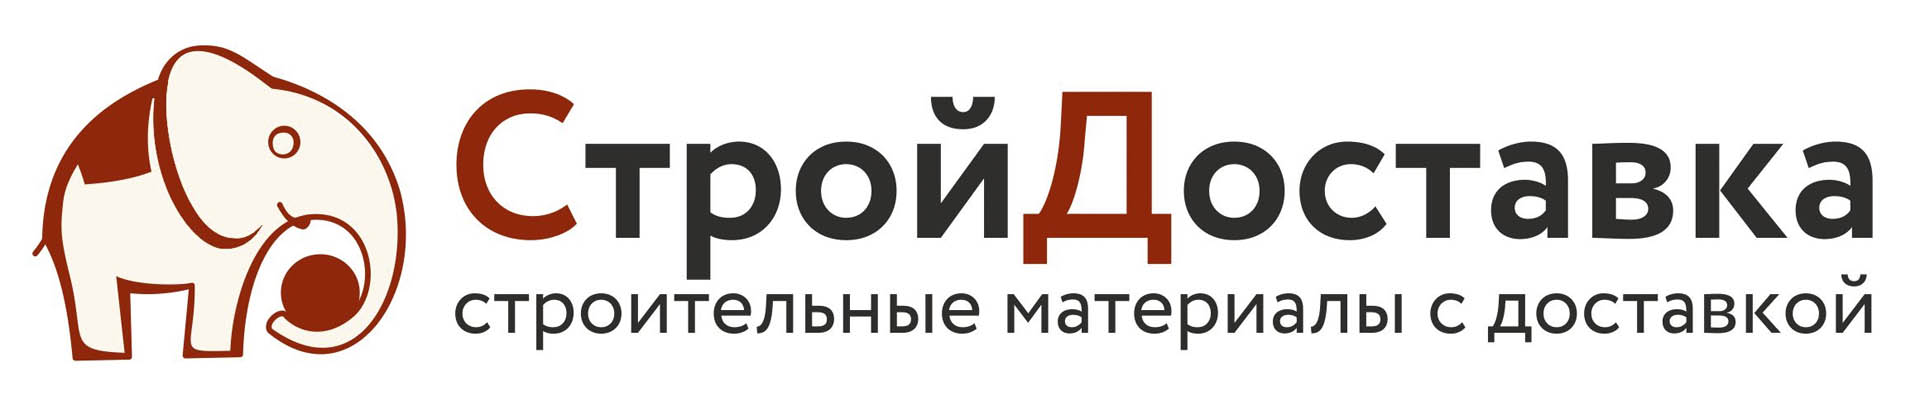 logo_o_komp.jpg